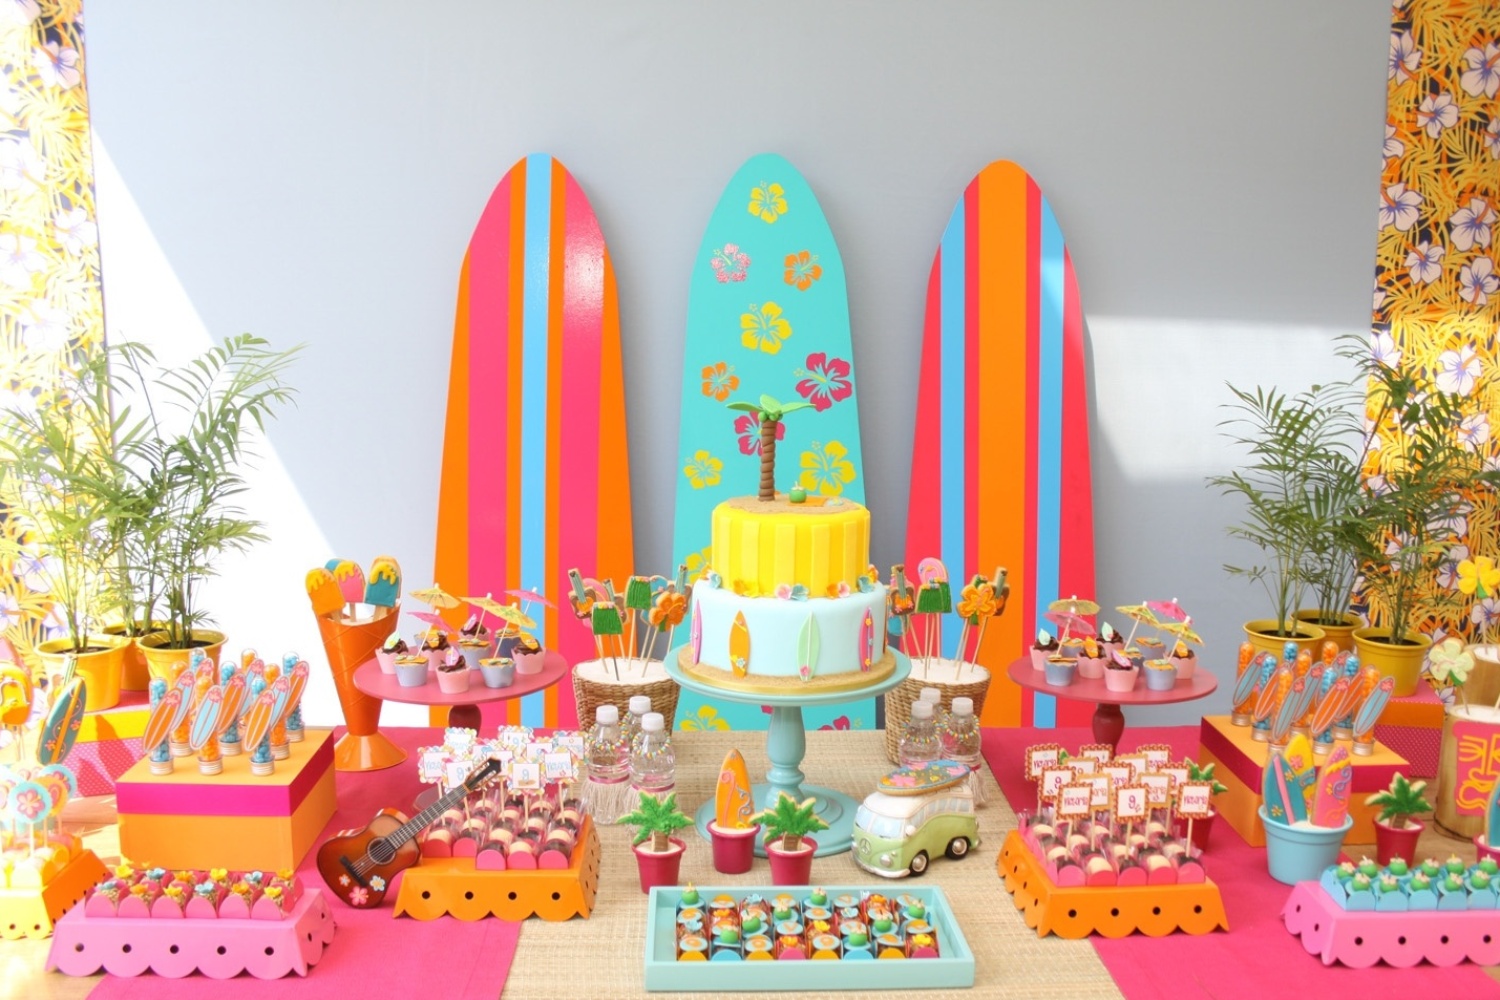 Fotos Veja opções de mesas decoradas para festas infantis UOL Universa